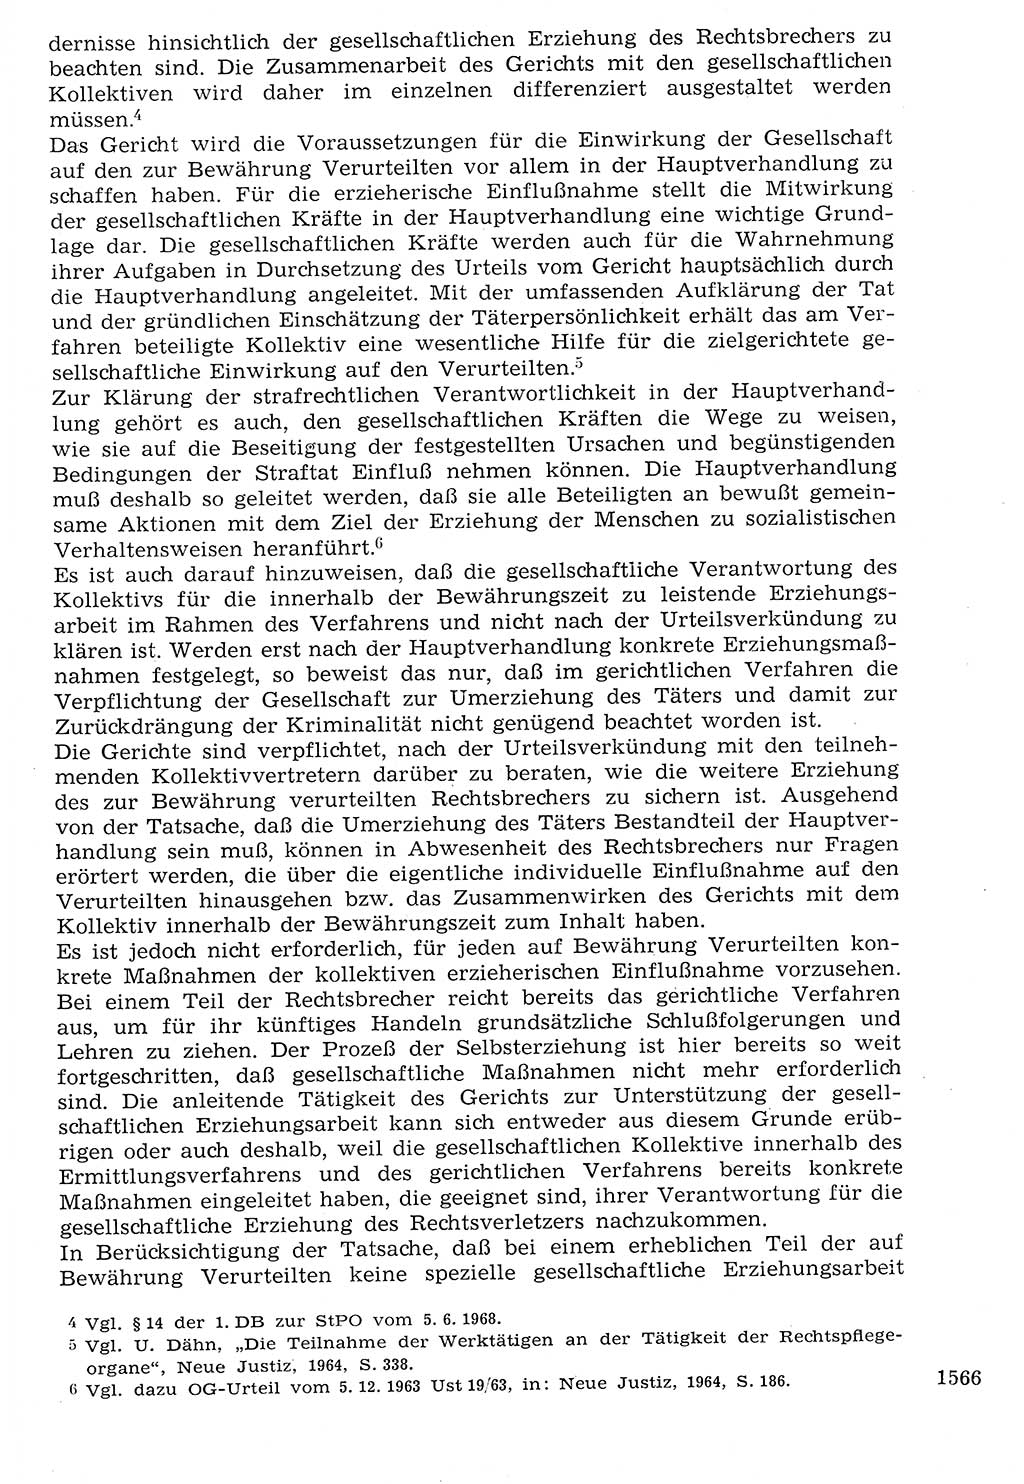 Staat und Recht (StuR), 17. Jahrgang [Deutsche Demokratische Republik (DDR)] 1968, Seite 1566 (StuR DDR 1968, S. 1566)